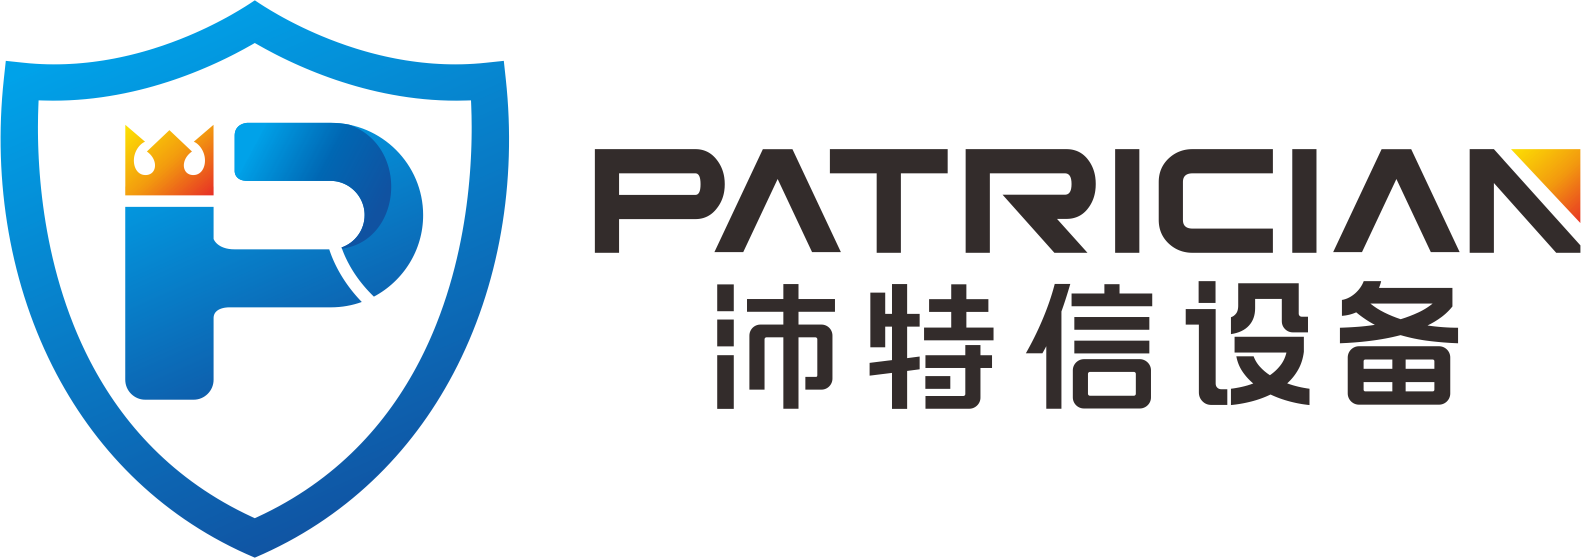 沛特信logo001.png